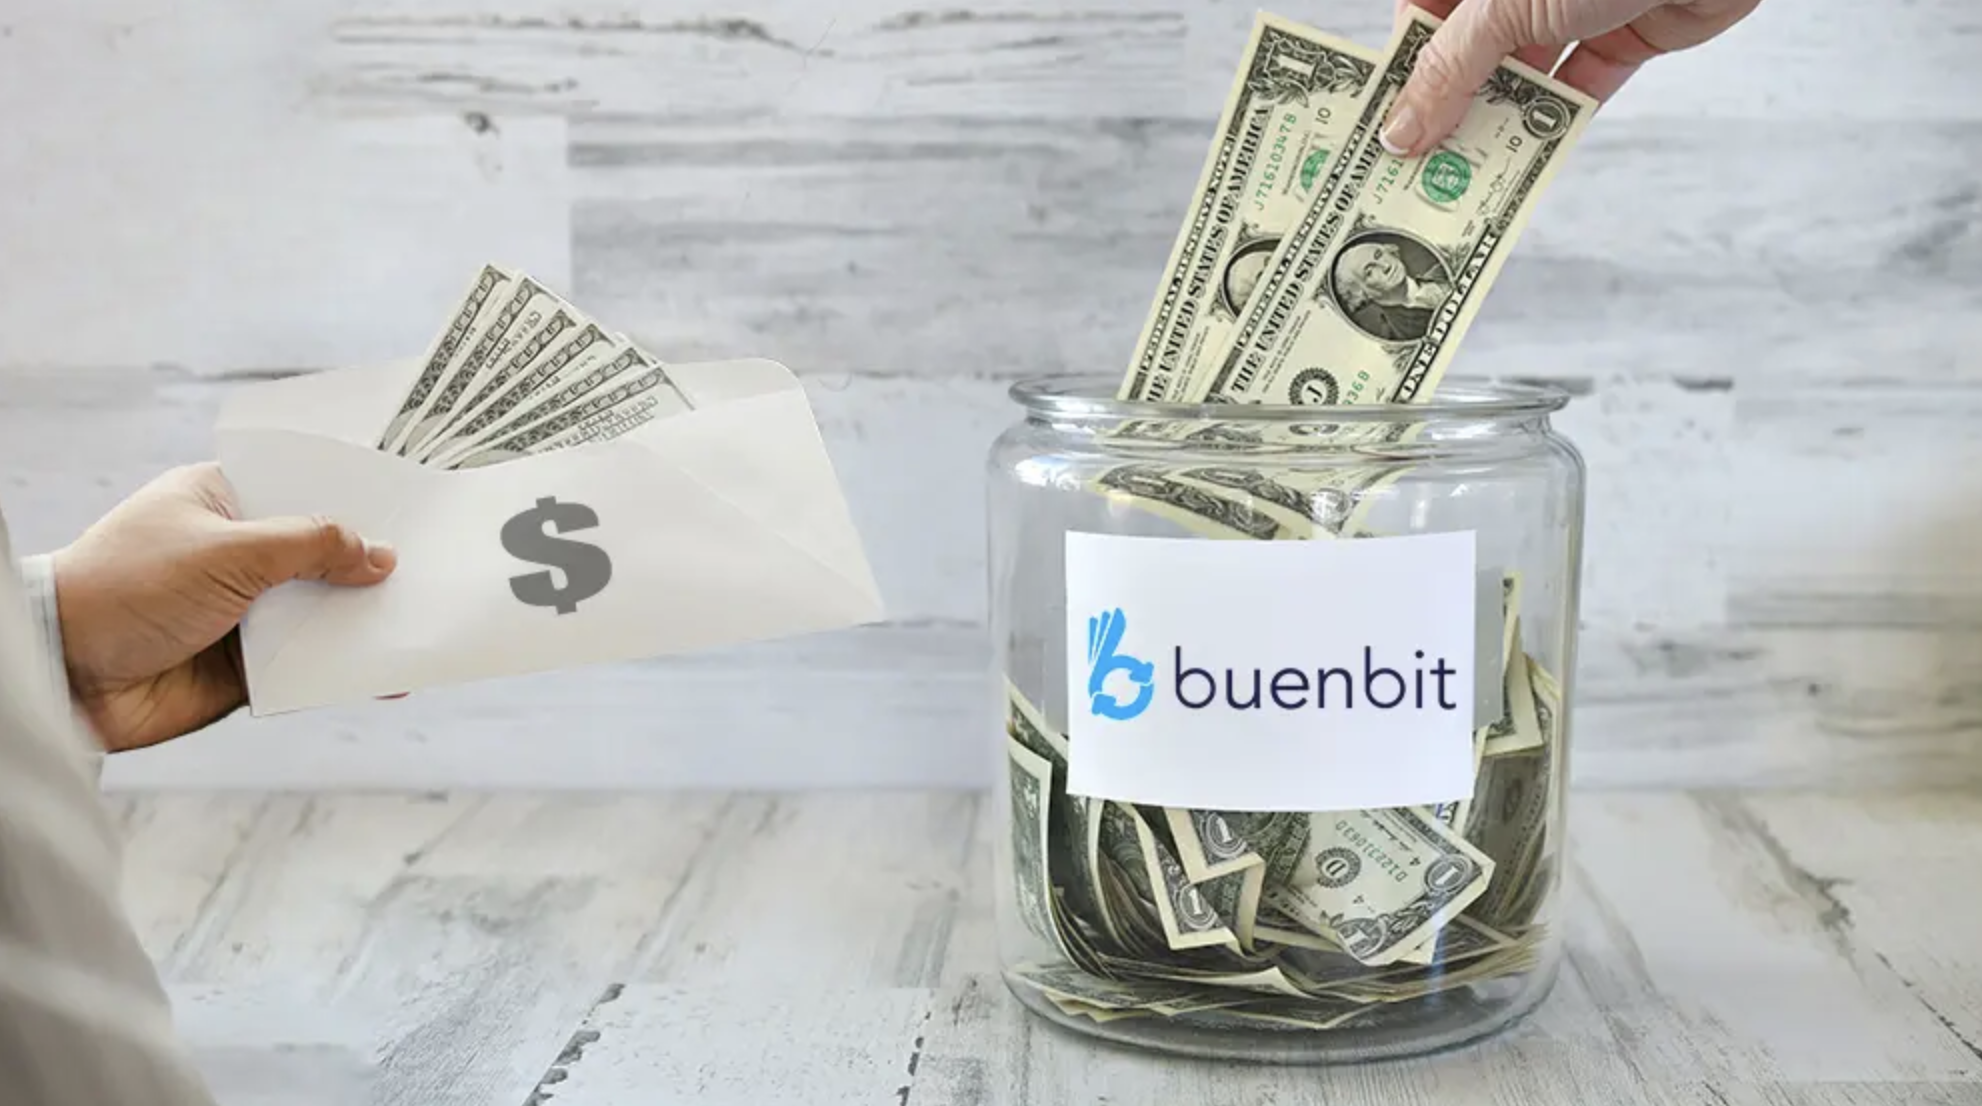 Exchange argentino Buenbit se expande en Latinoamérica tras recaudación millonaria